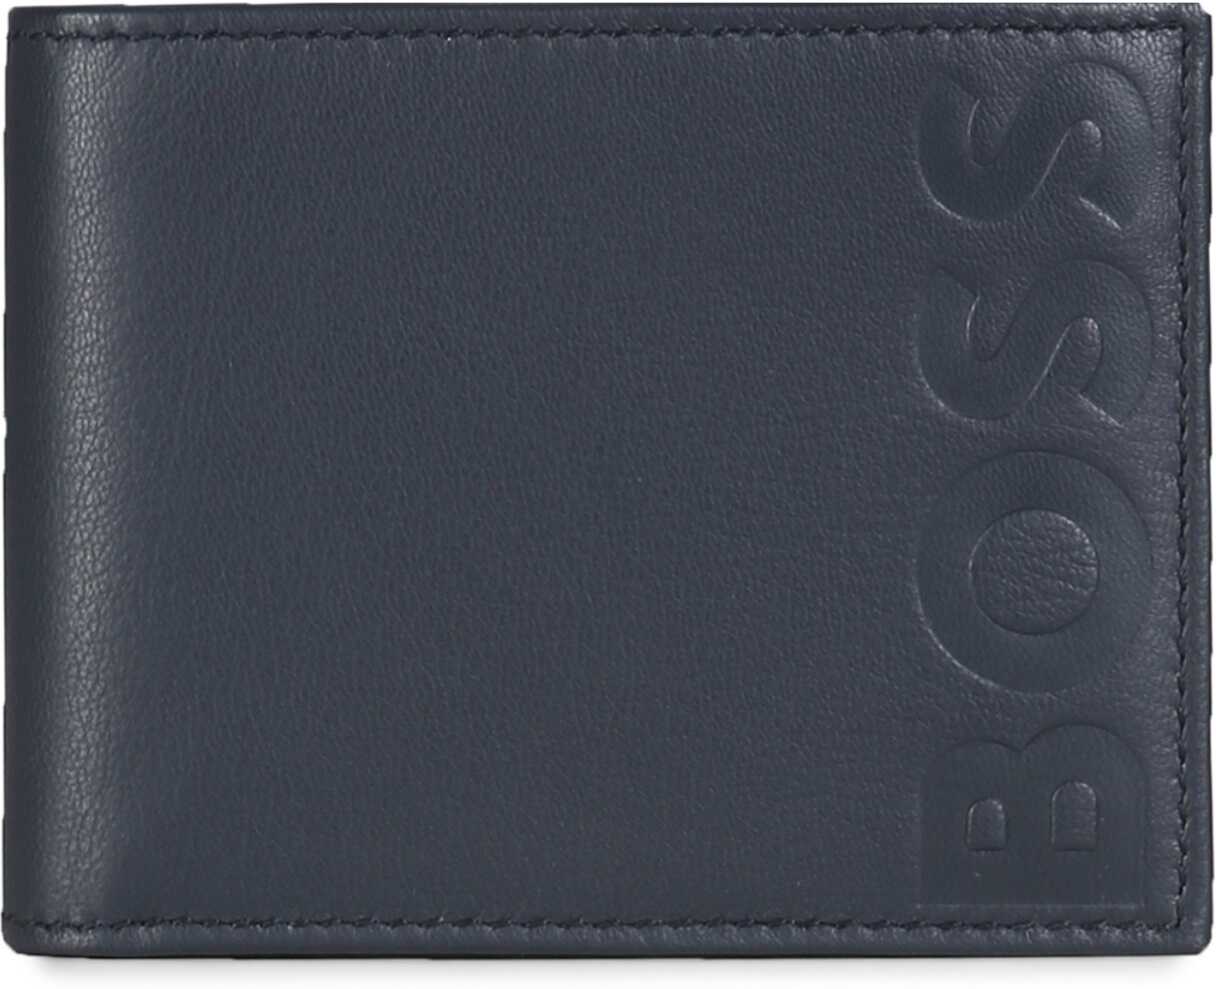 BOSS Leather Wallet BLUE